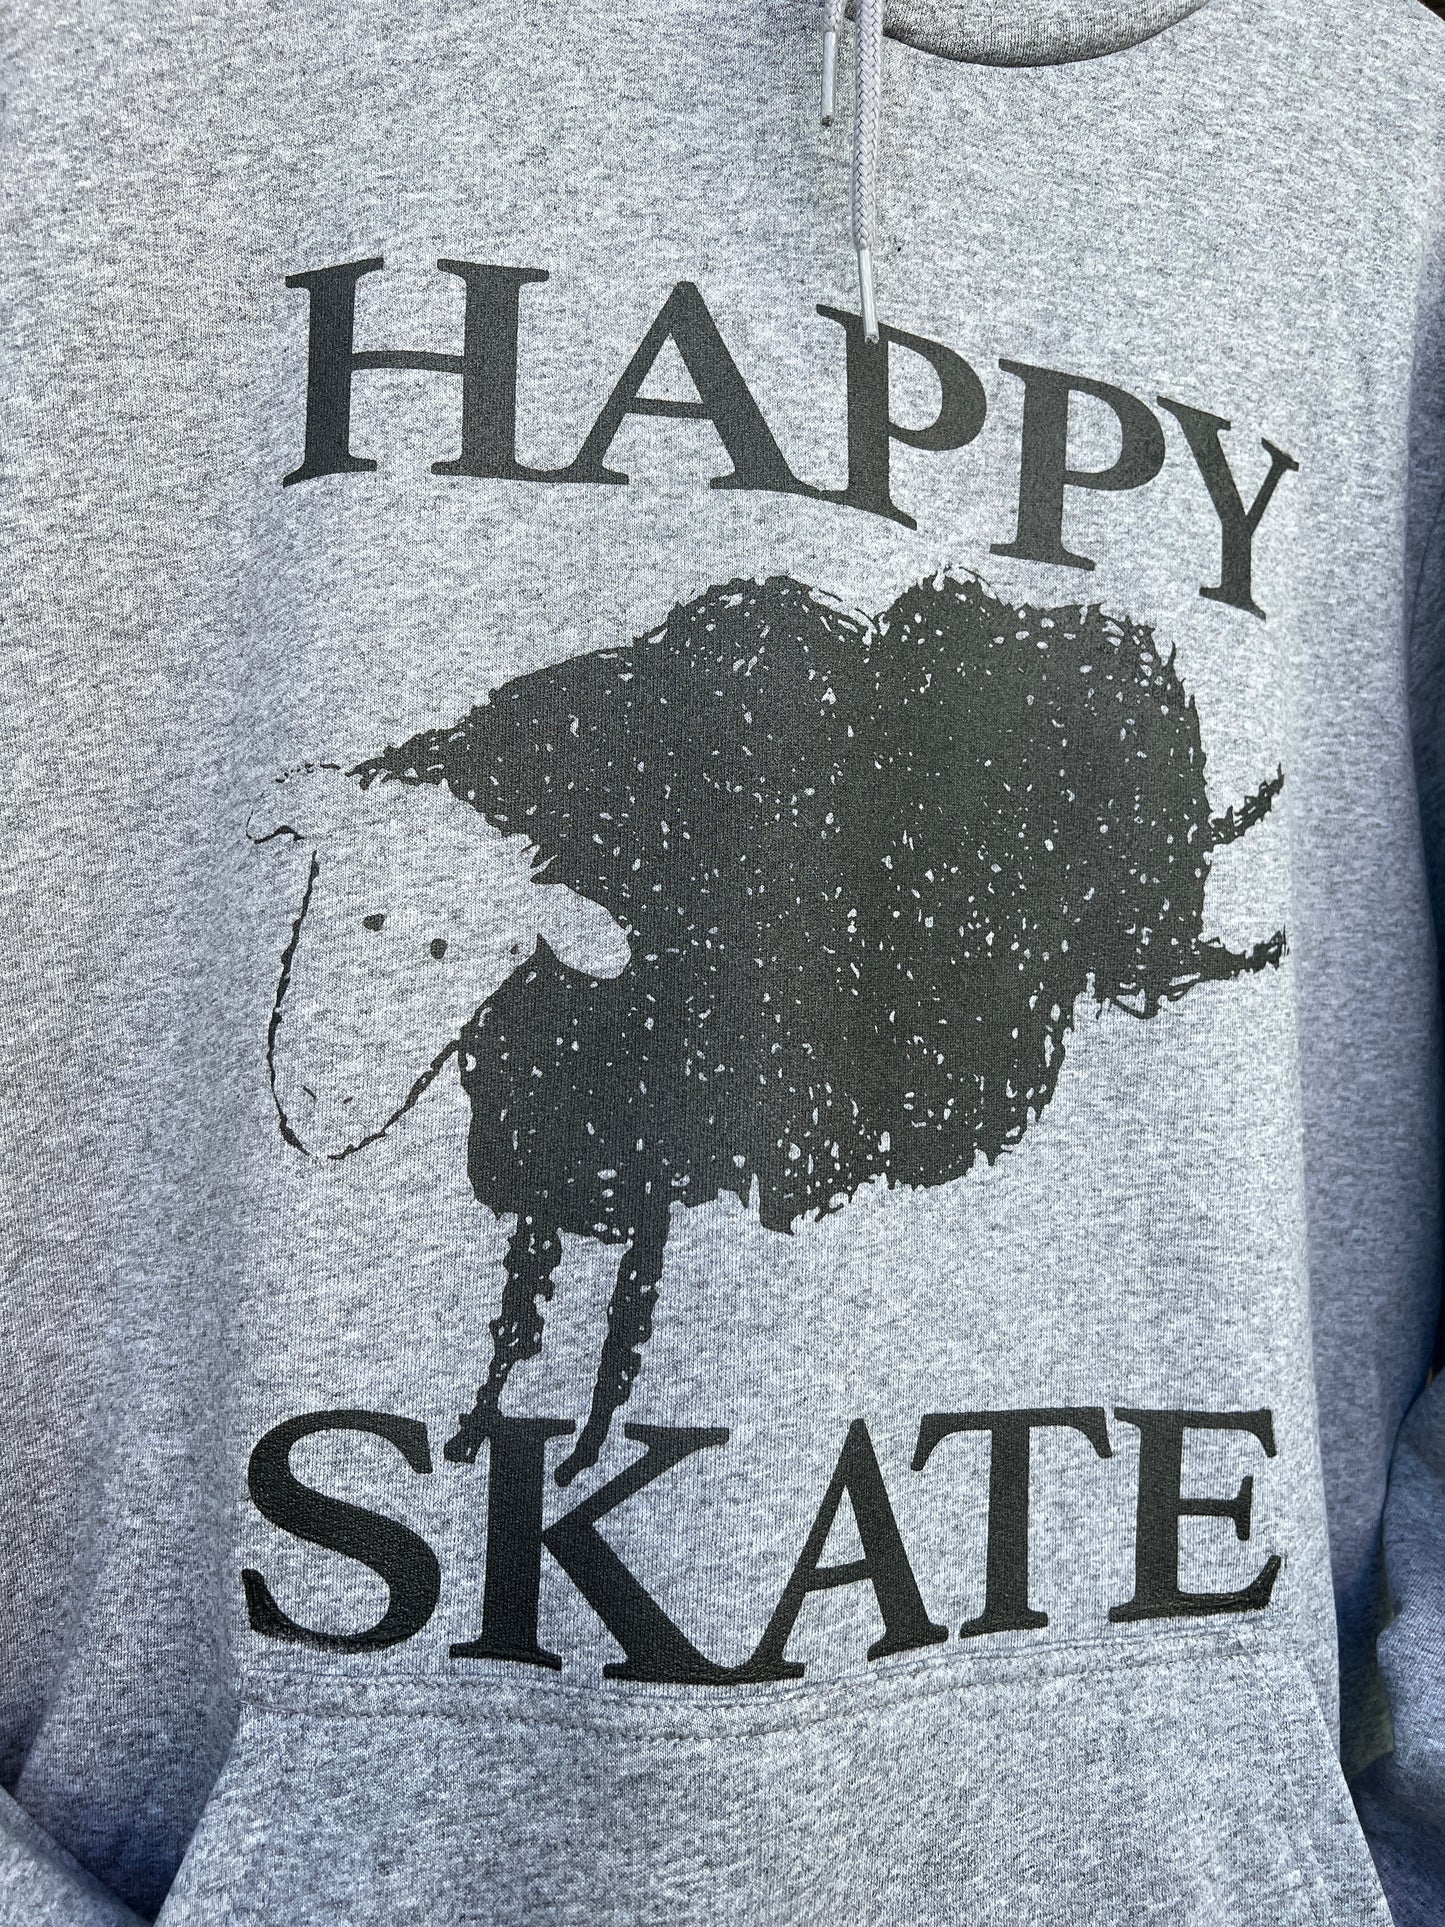 Happy Skate Black Sheep Hoodie